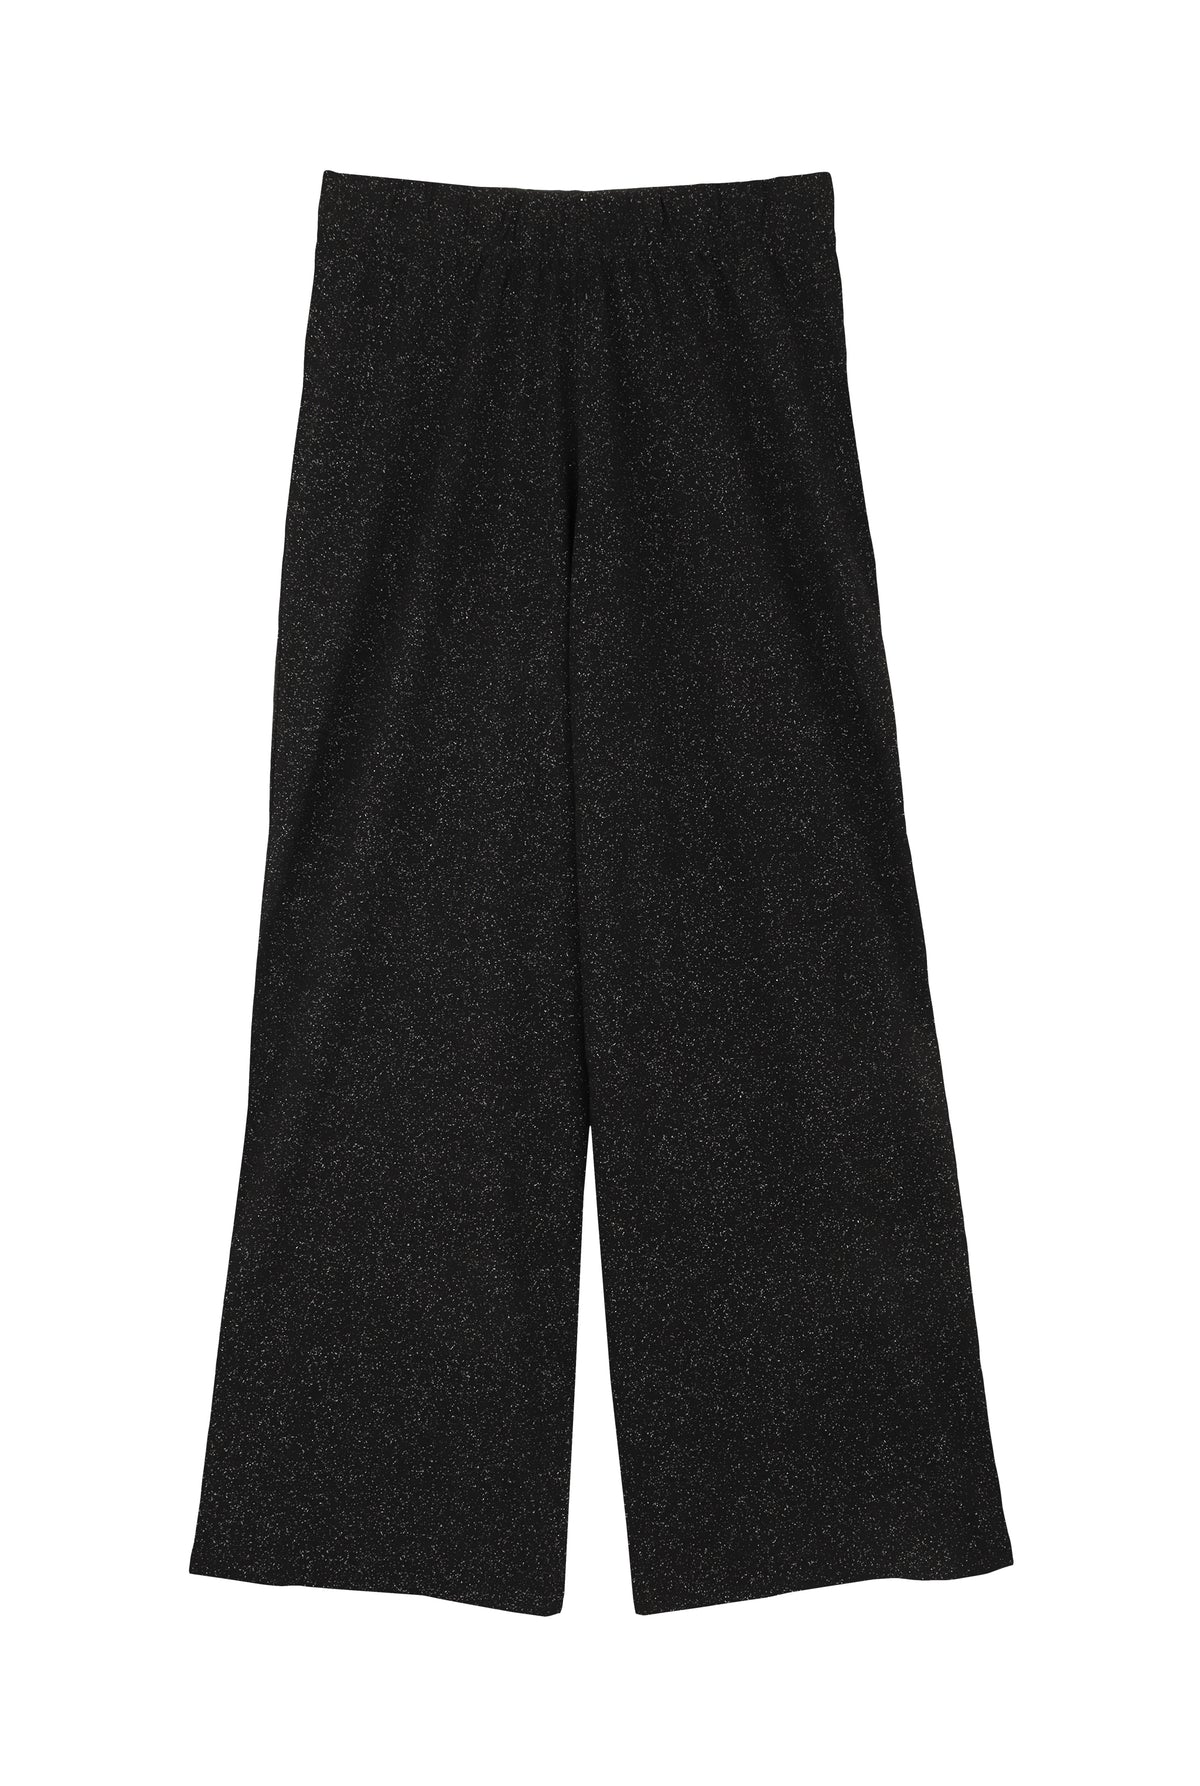 Pyjama long coton BIO - Paillettes Noir - Pantalons T-shirt - We Are Jolies